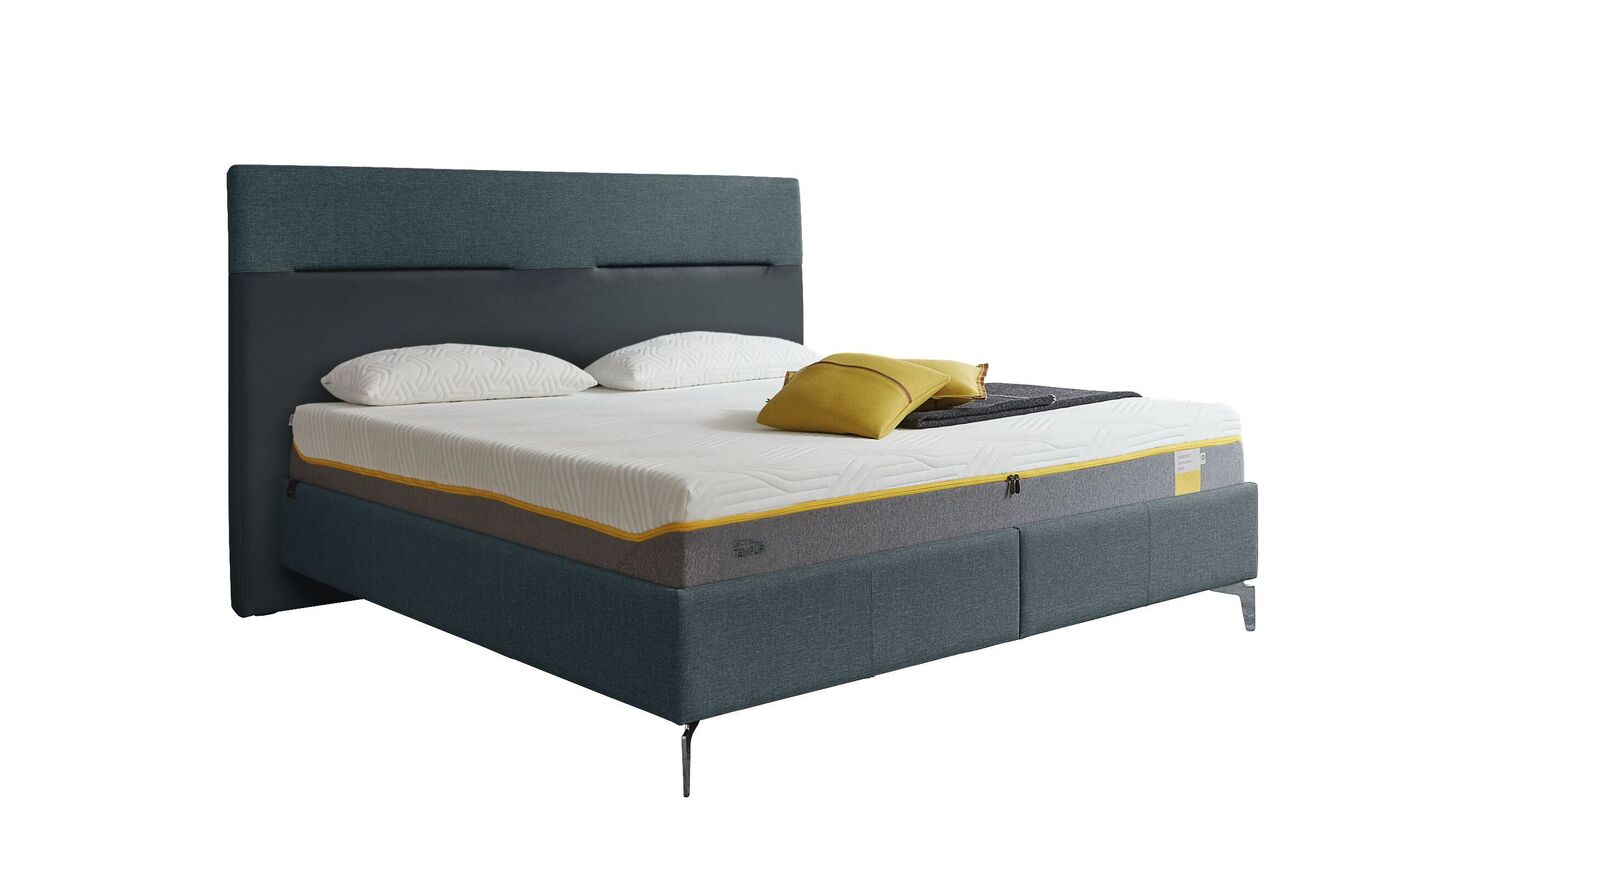 TEMPUR Bett Relax Texture mit Bezug in Webstoff und Kunstleder in Dunkelblau